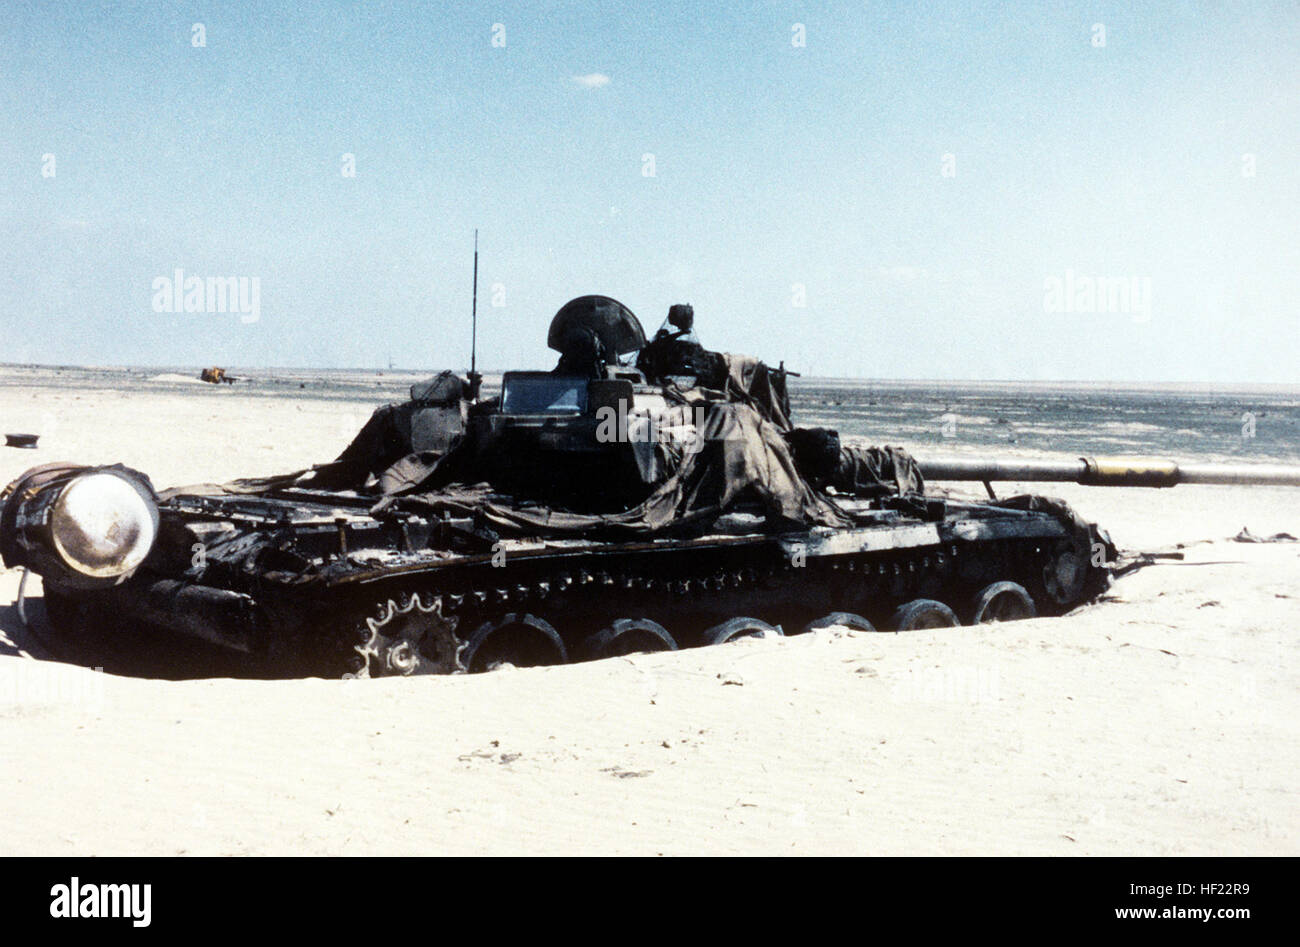 Un Irakien endommagé le char de combat principal T-72 drapé avec des morceaux de filet de camouflage se trouve dans le désert après avoir été abandonné pendant l'opération Tempête du désert. Endommagé UN T-72 irakien revêtu de morceaux de filet de camouflage Banque D'Images